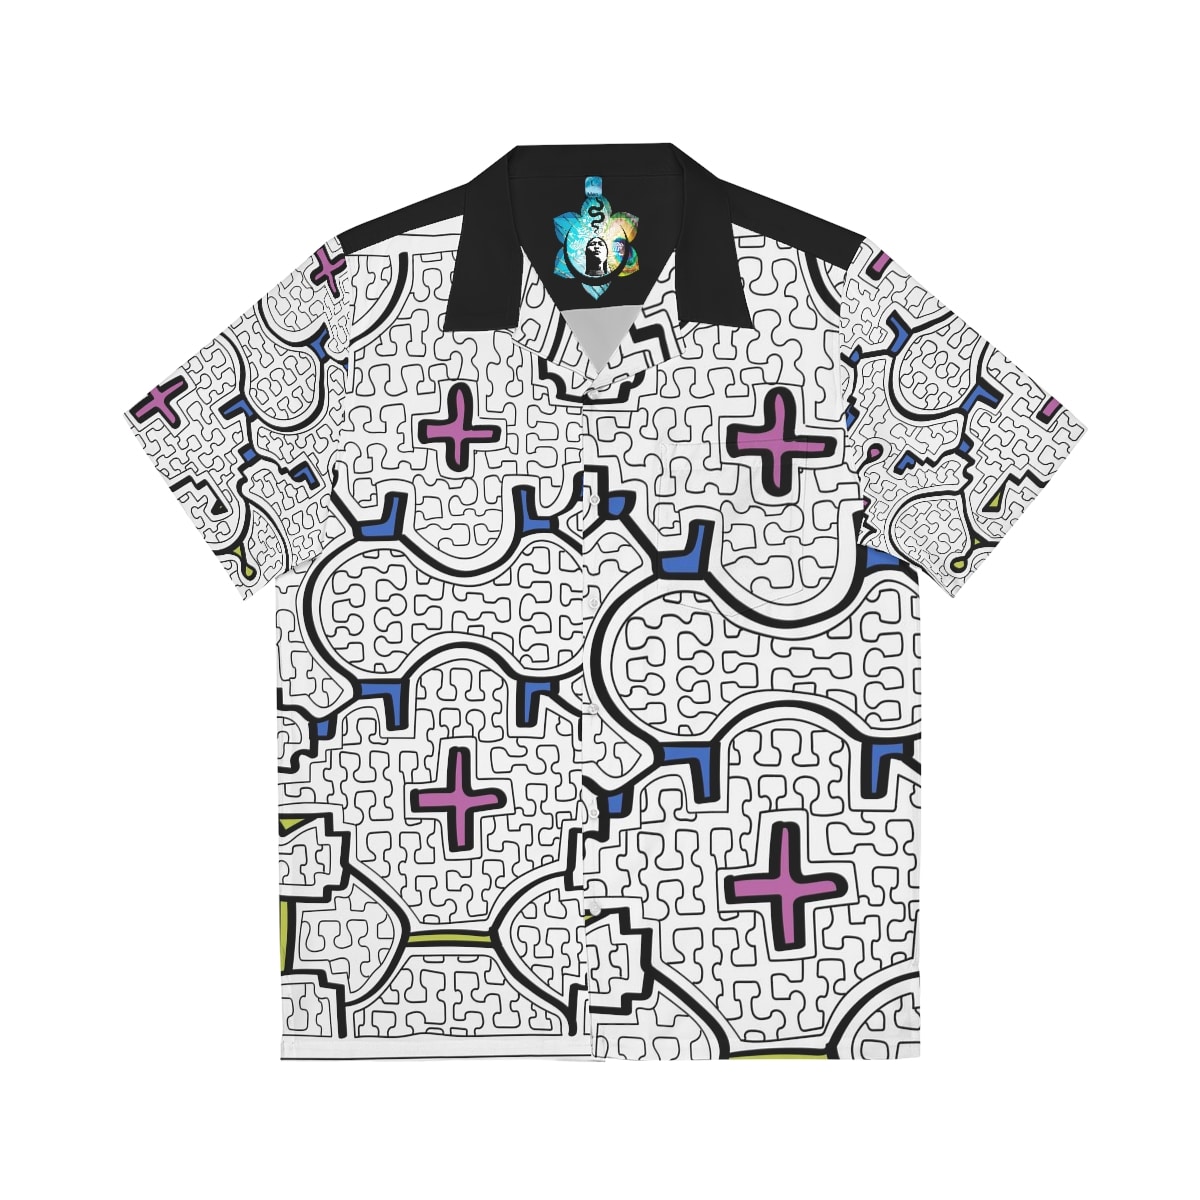 Louis Vuitton Men's Graffiti Button-Up Shirt